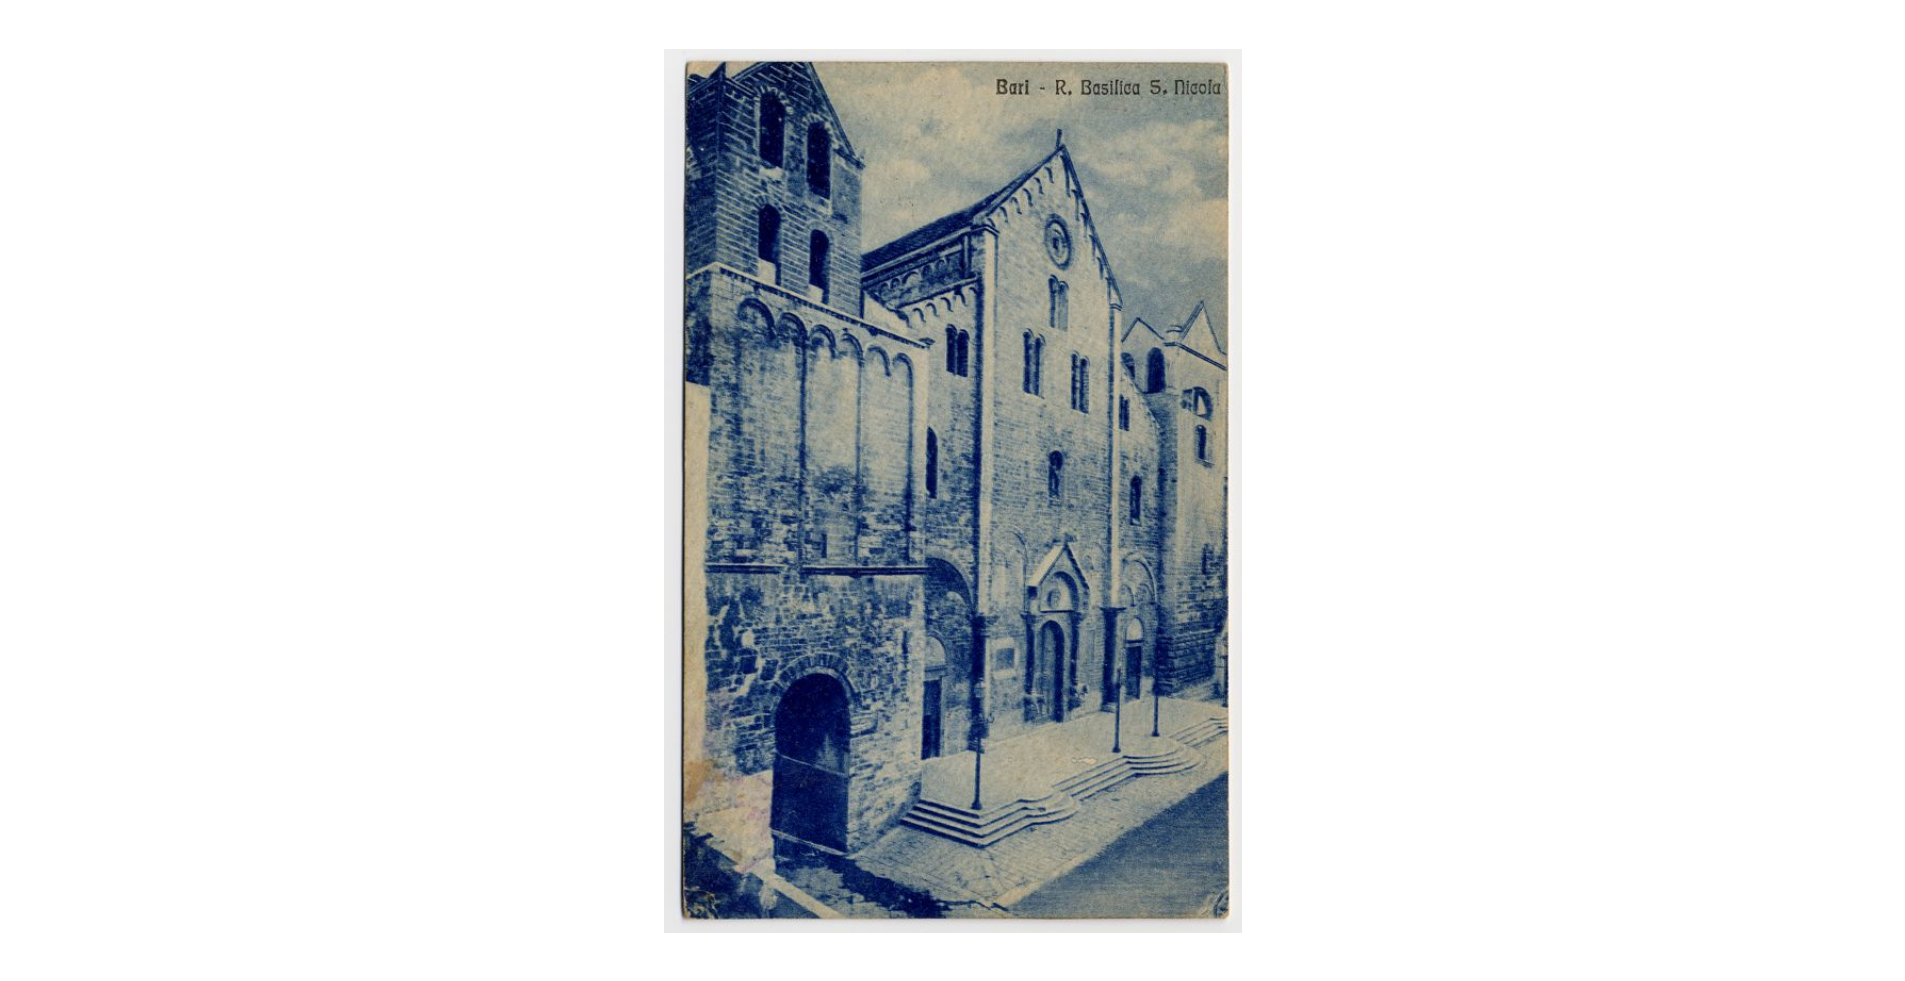 Fotografo non identificato, Bari - Basilica di S. Nicola di Bari, 1915, cartolina, FFC013986